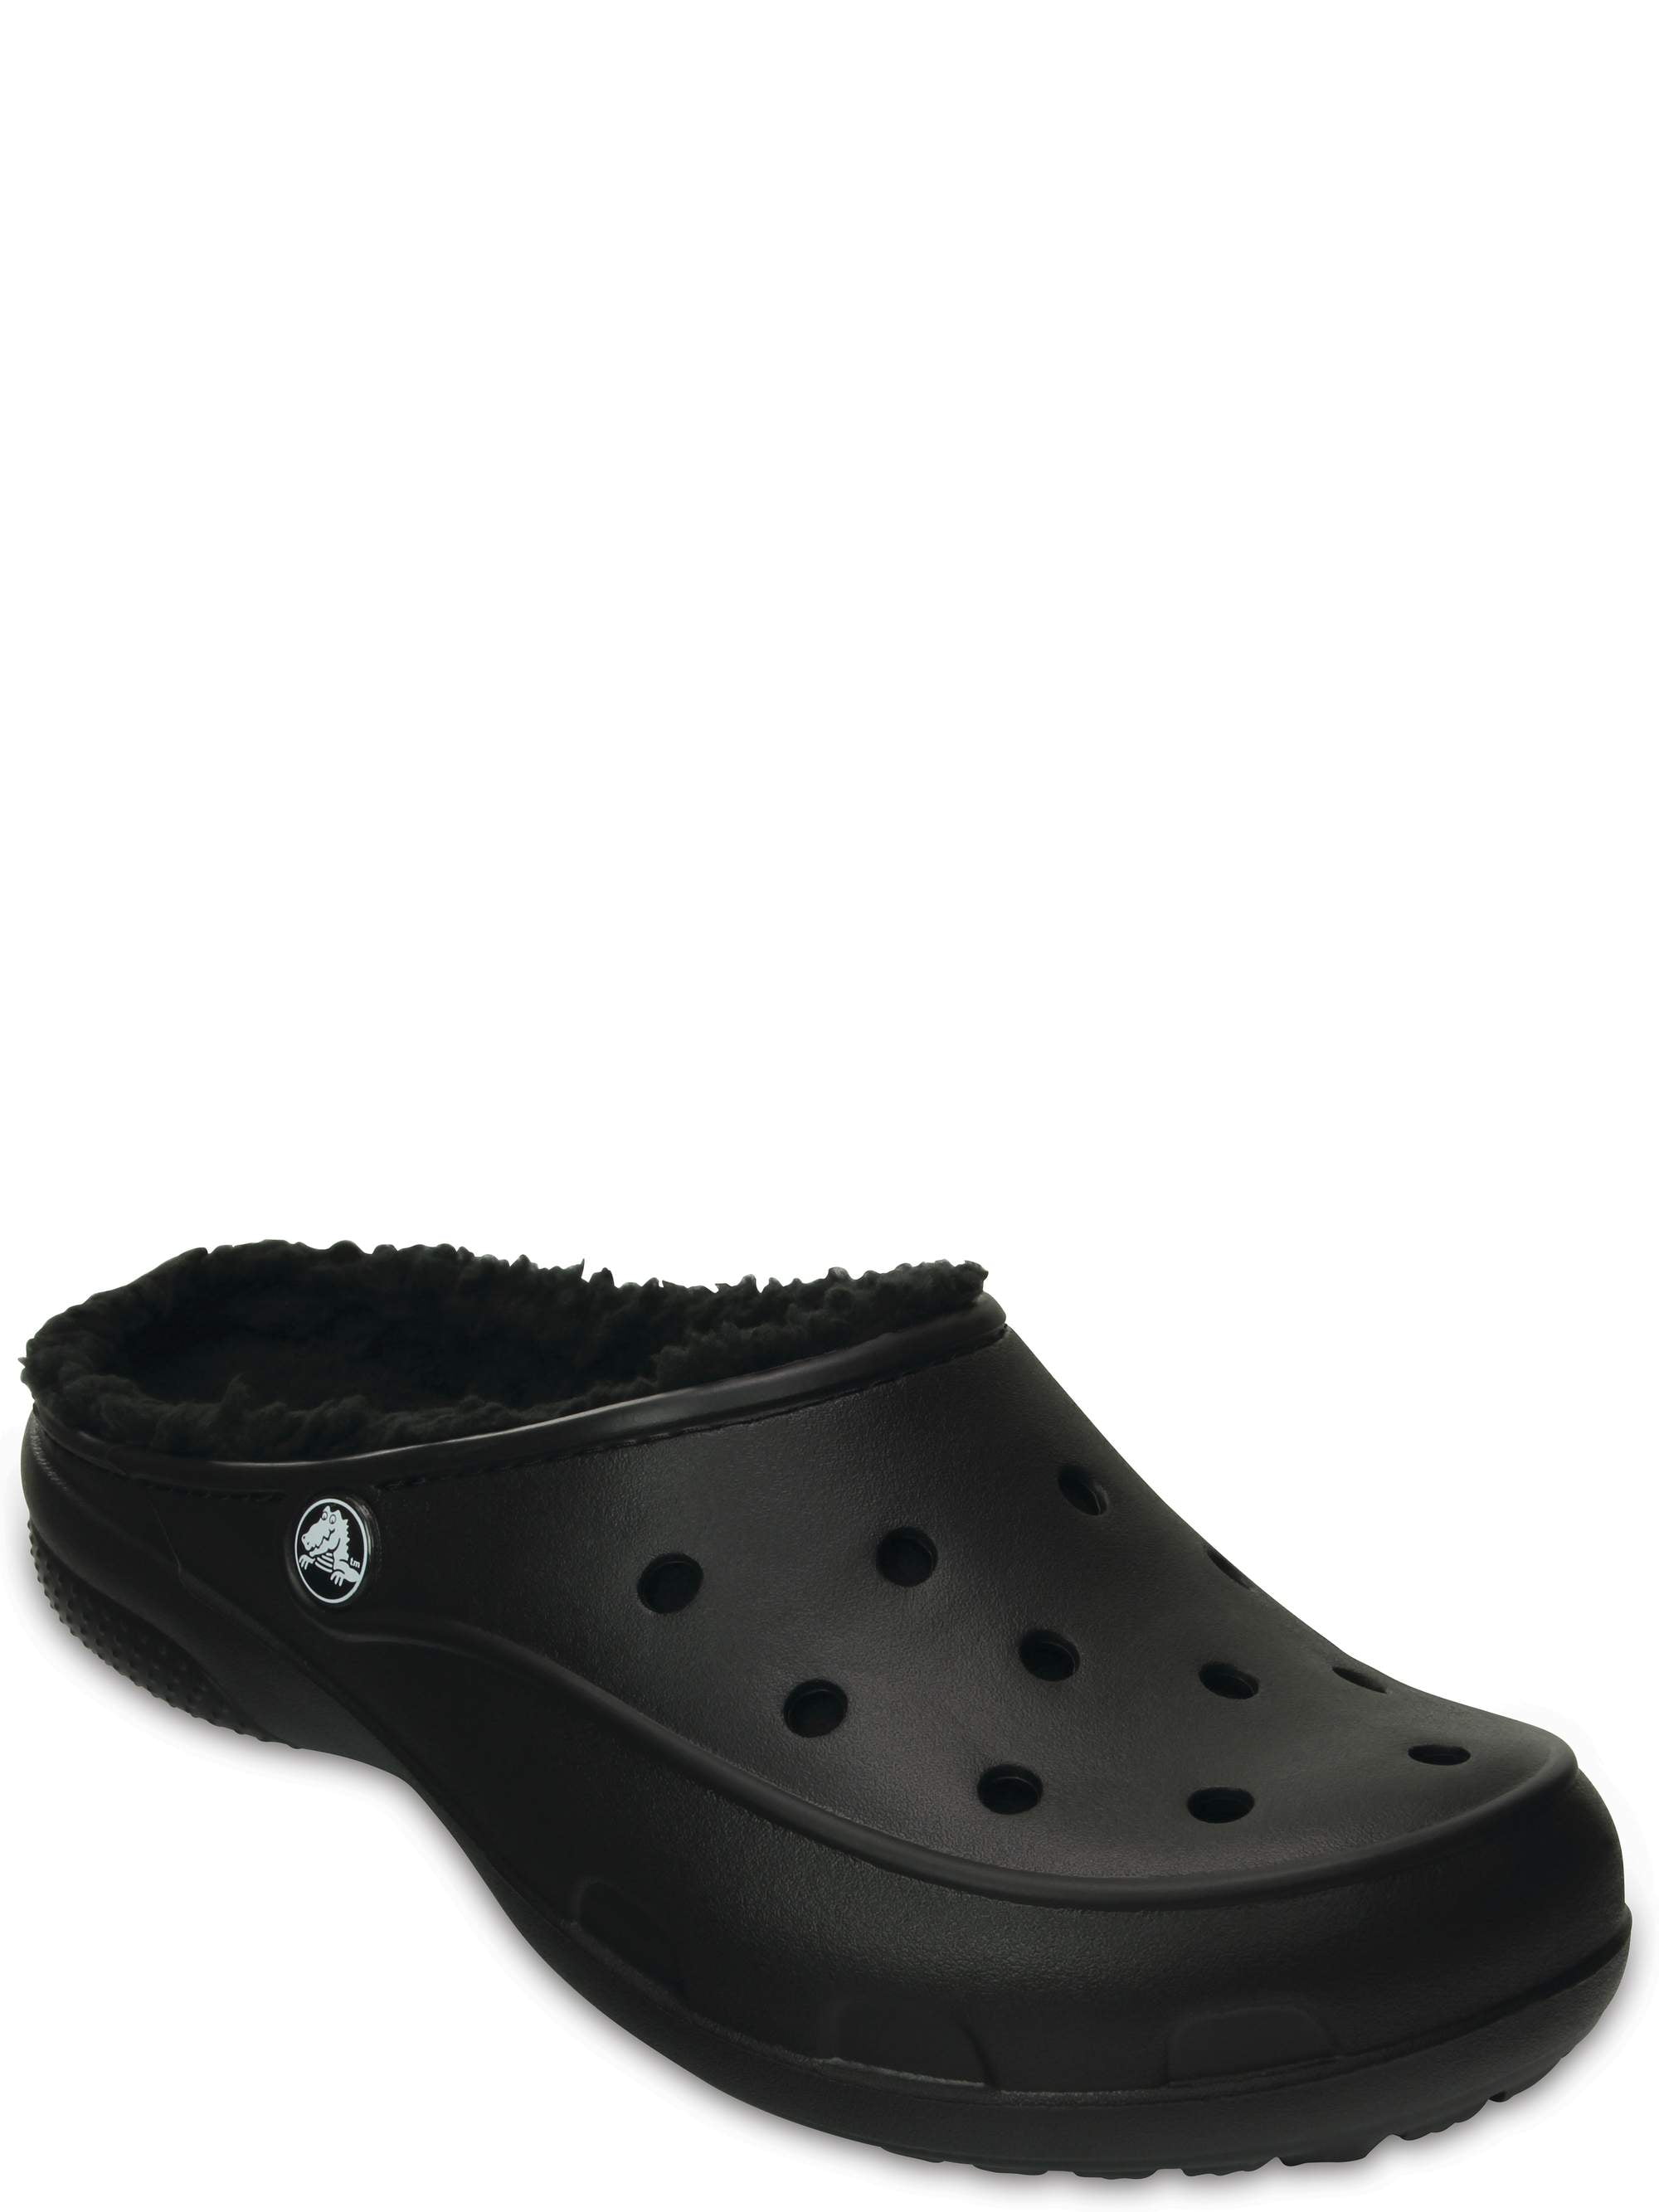 walmart women's crocs